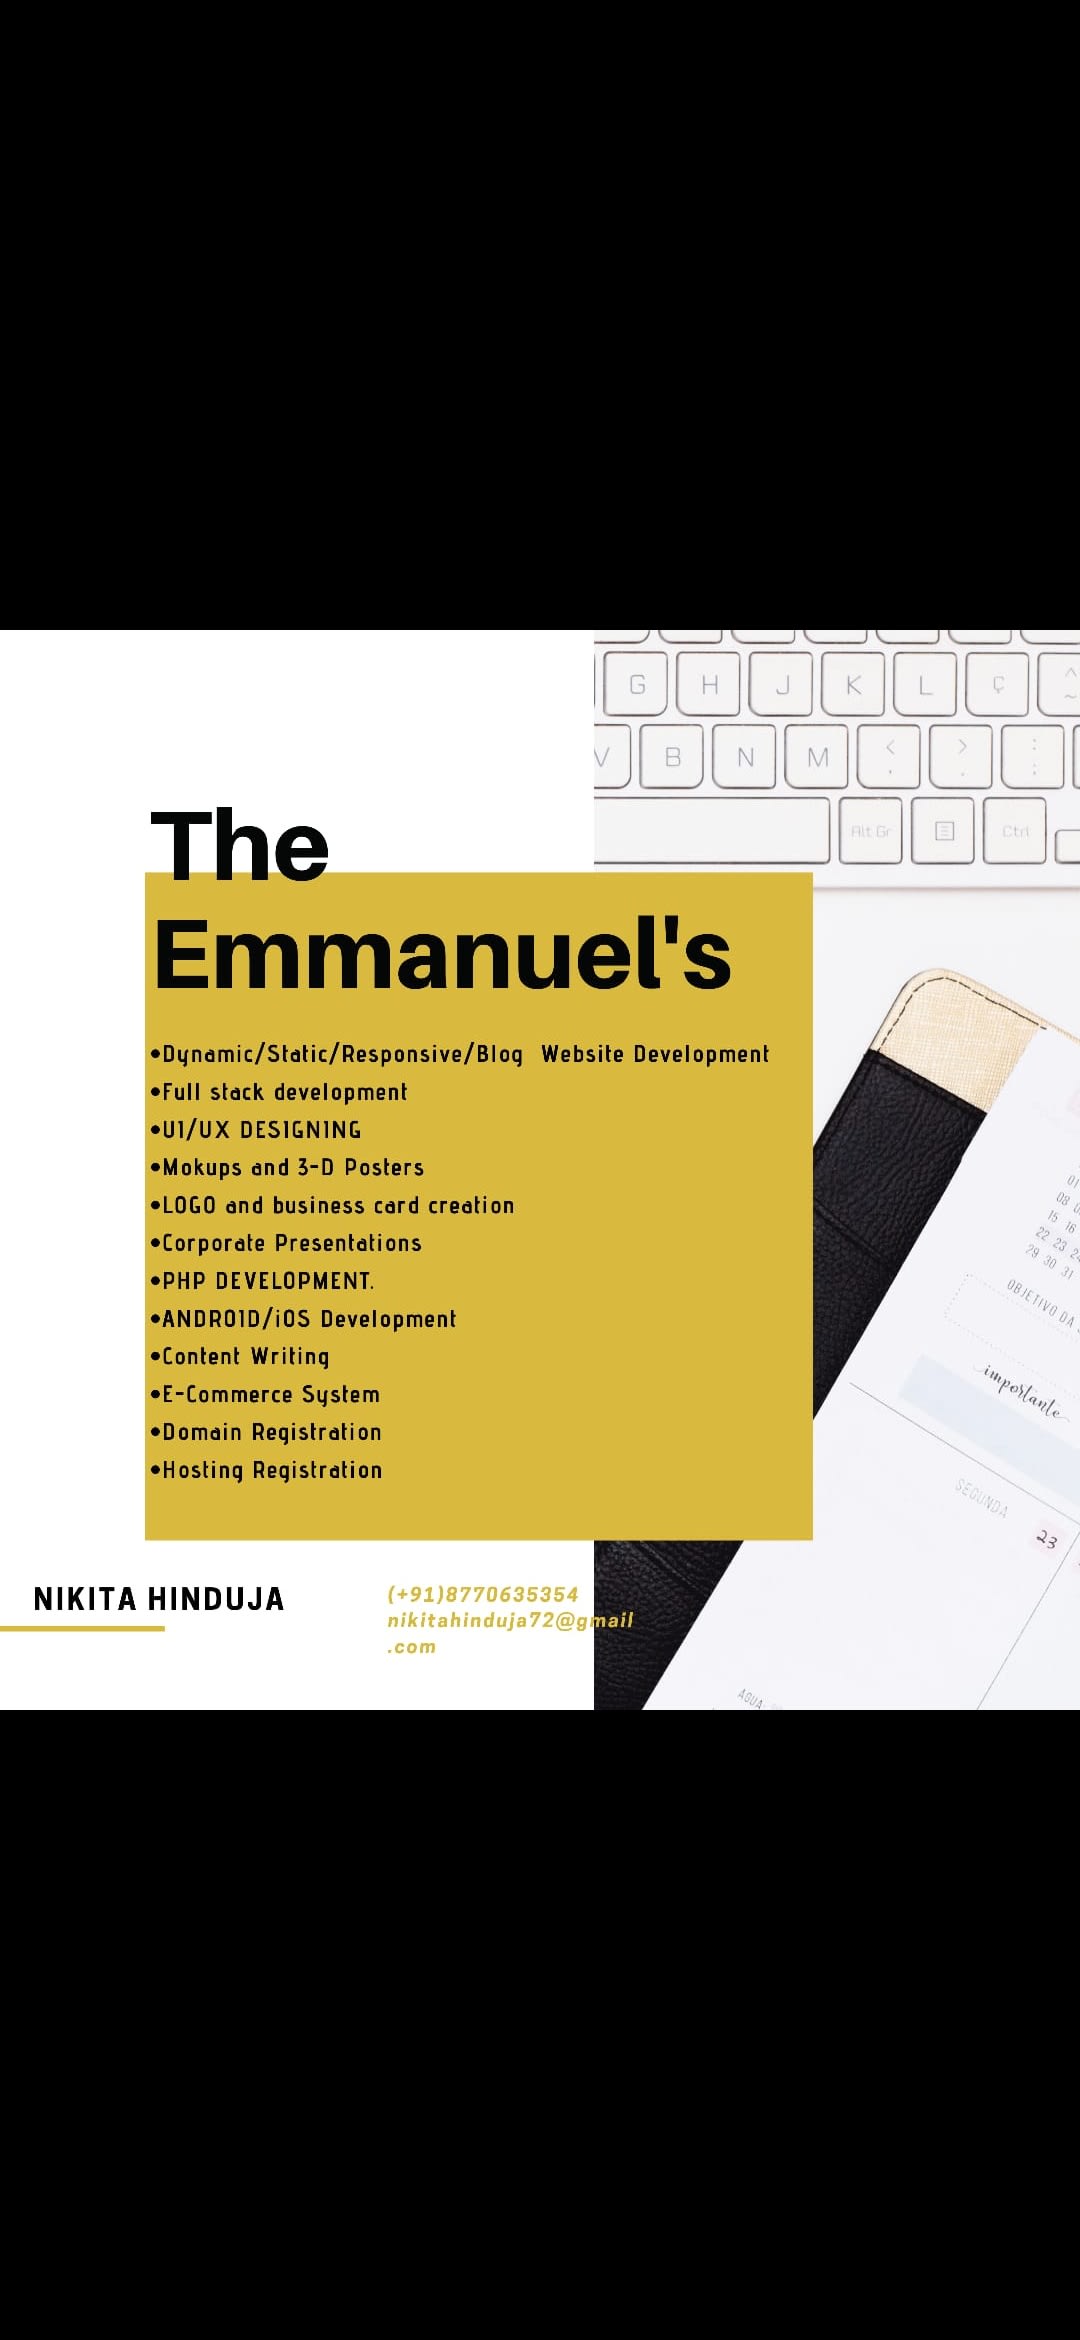 The Emmanuel's